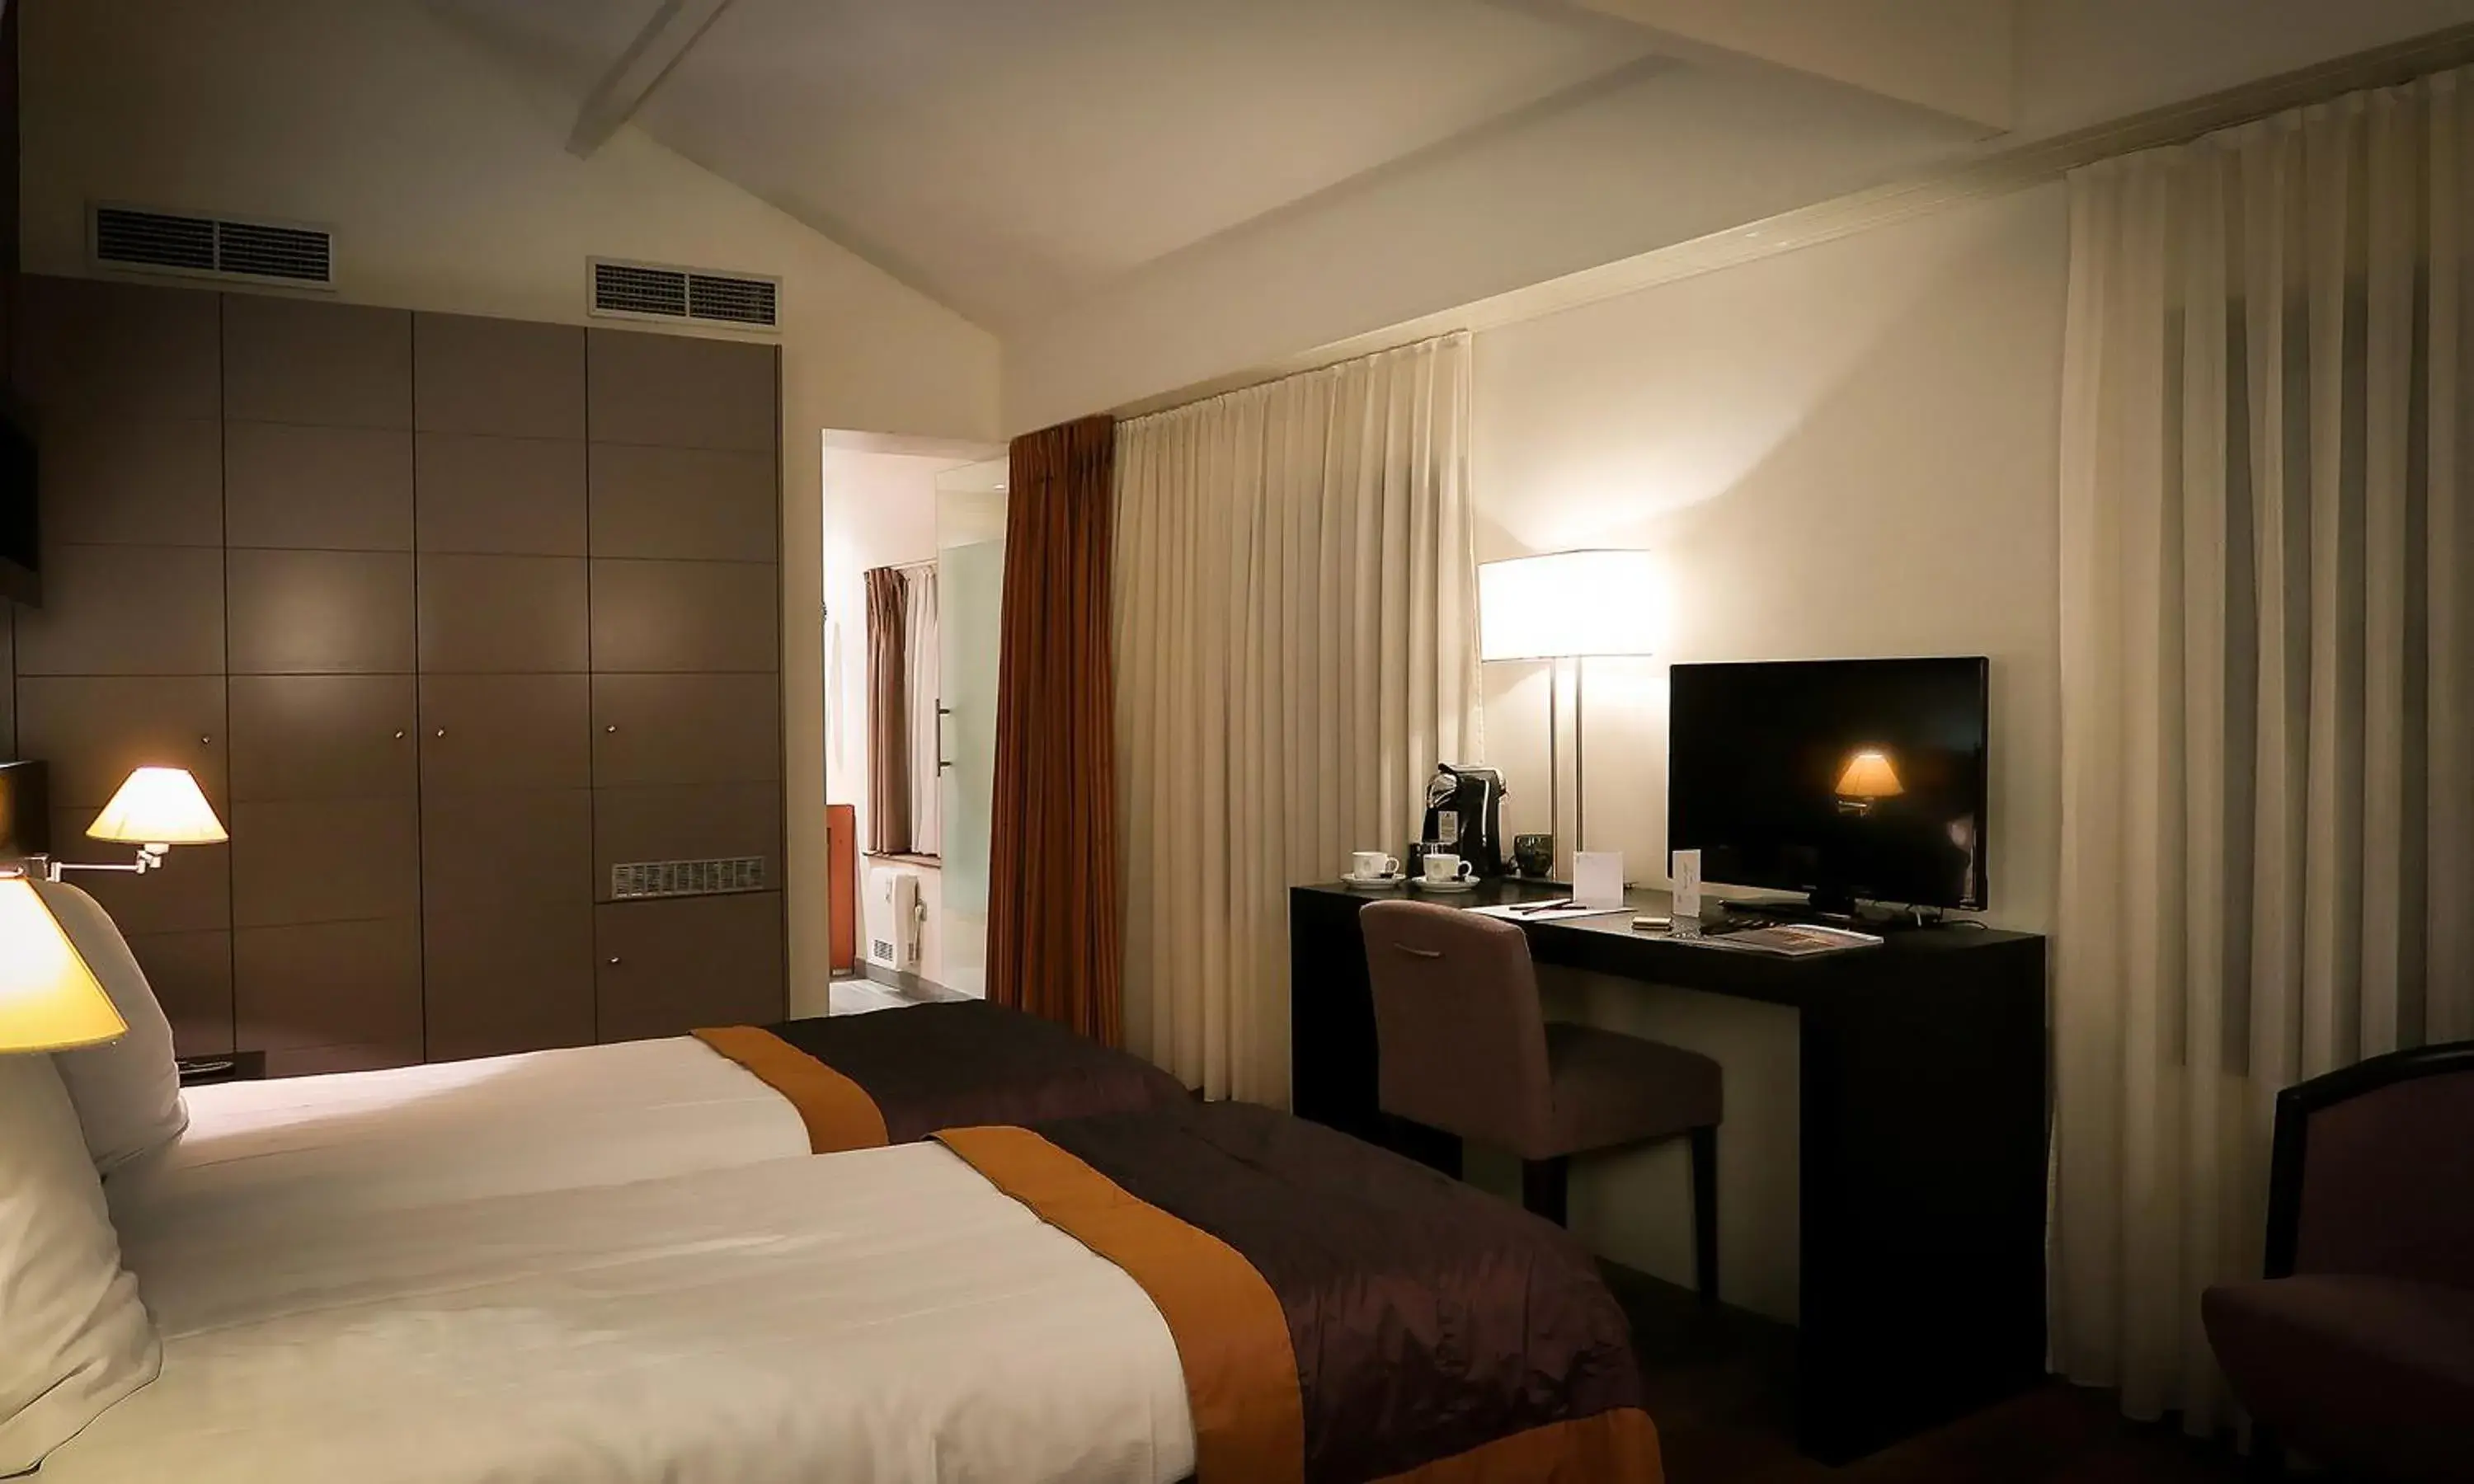 Bedroom, TV/Entertainment Center in Hotel Van Eyck